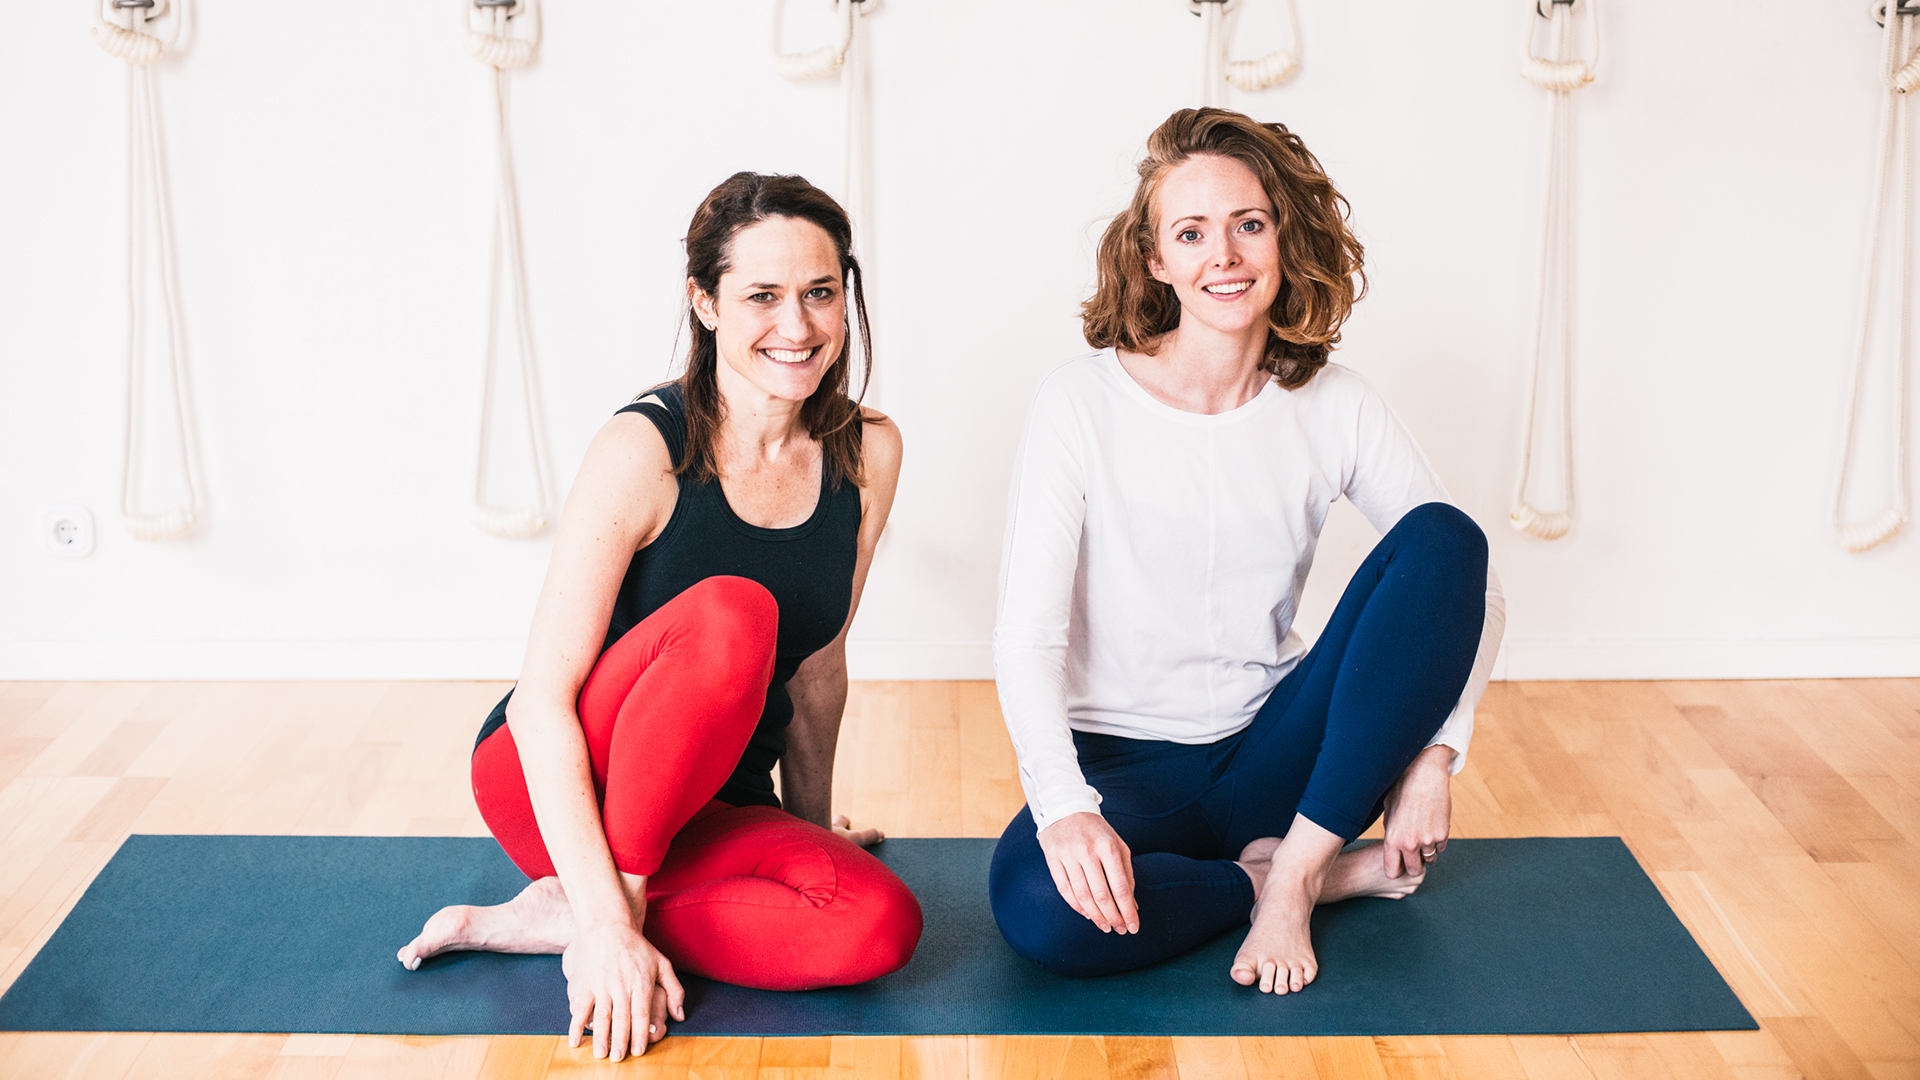 Foodadit founder, Alanna Lawley and Elizabeth Smullens Brass - Iyengar Yoga Teacher in yoga ropes